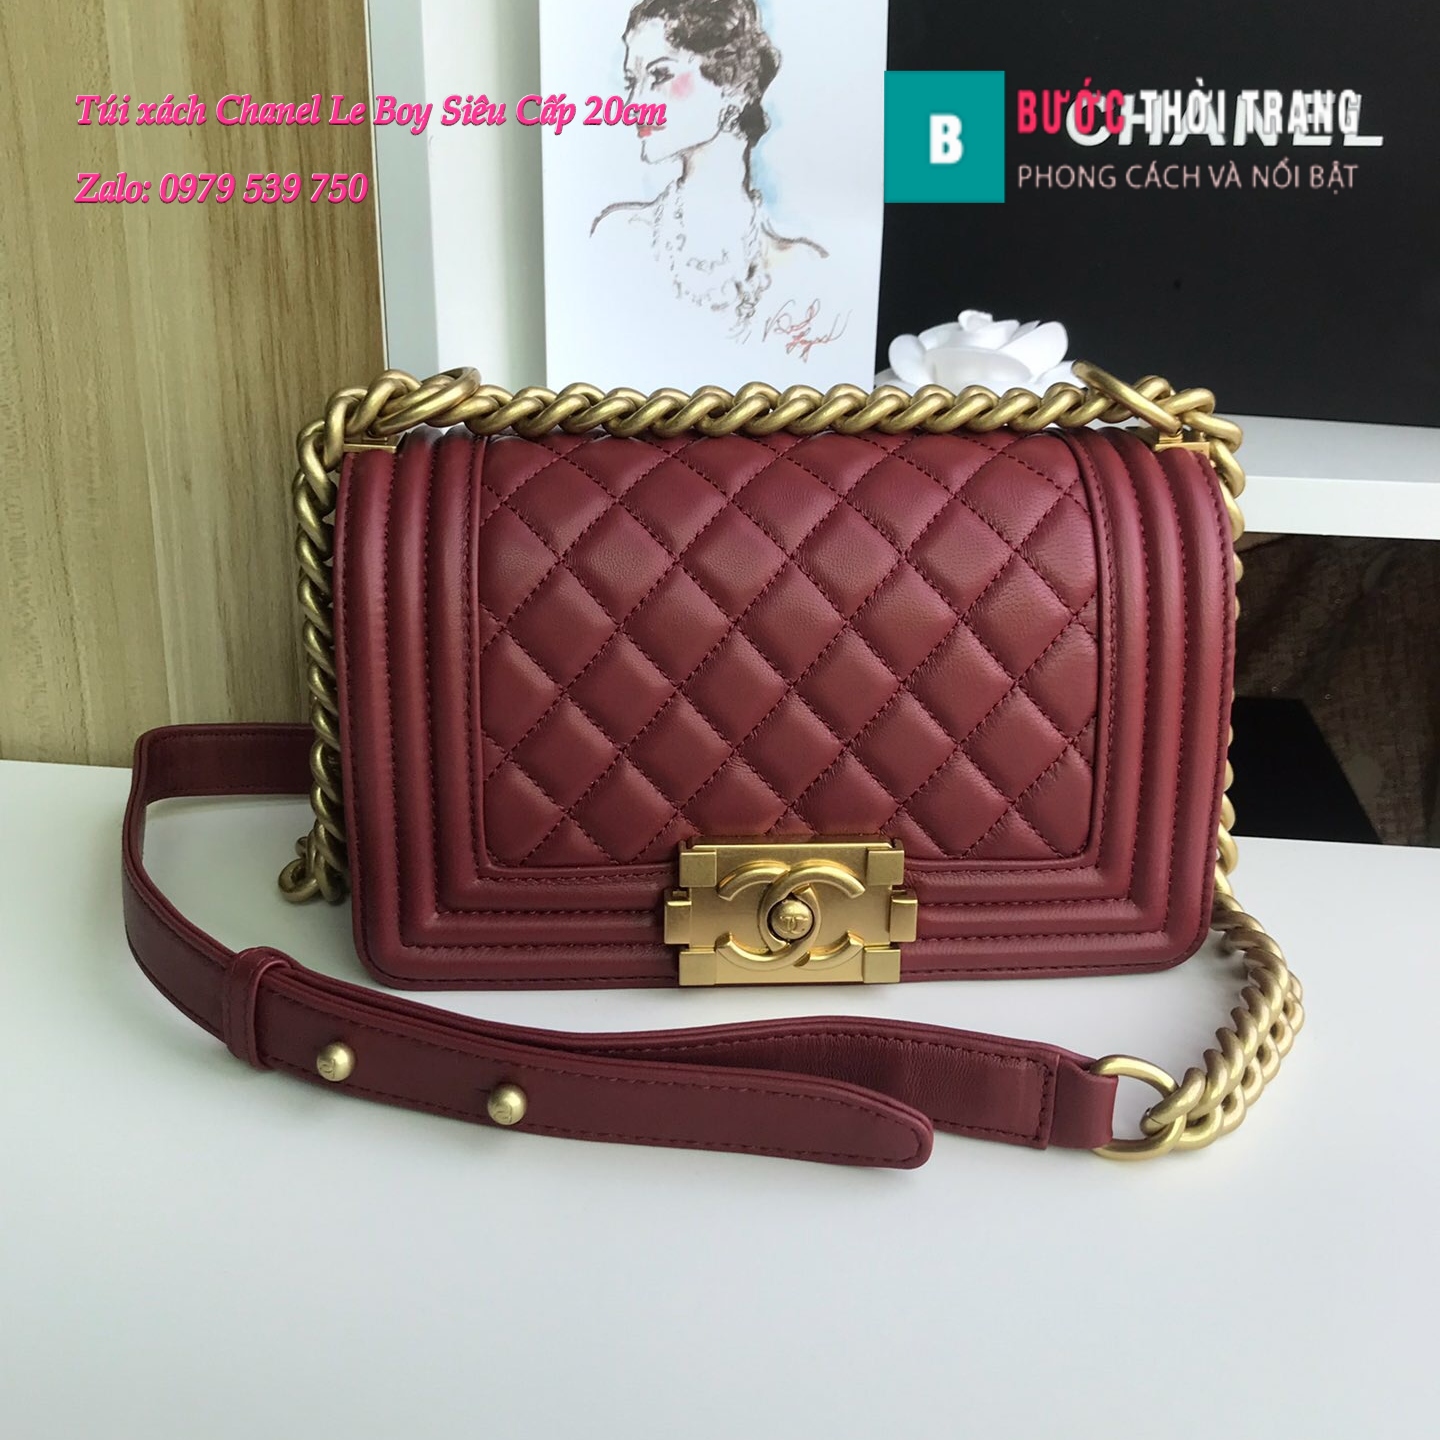 Túi Xách Chanel Boy Siêu Cấp ô trám màu đỏ đô 20cm – A67085 (1)